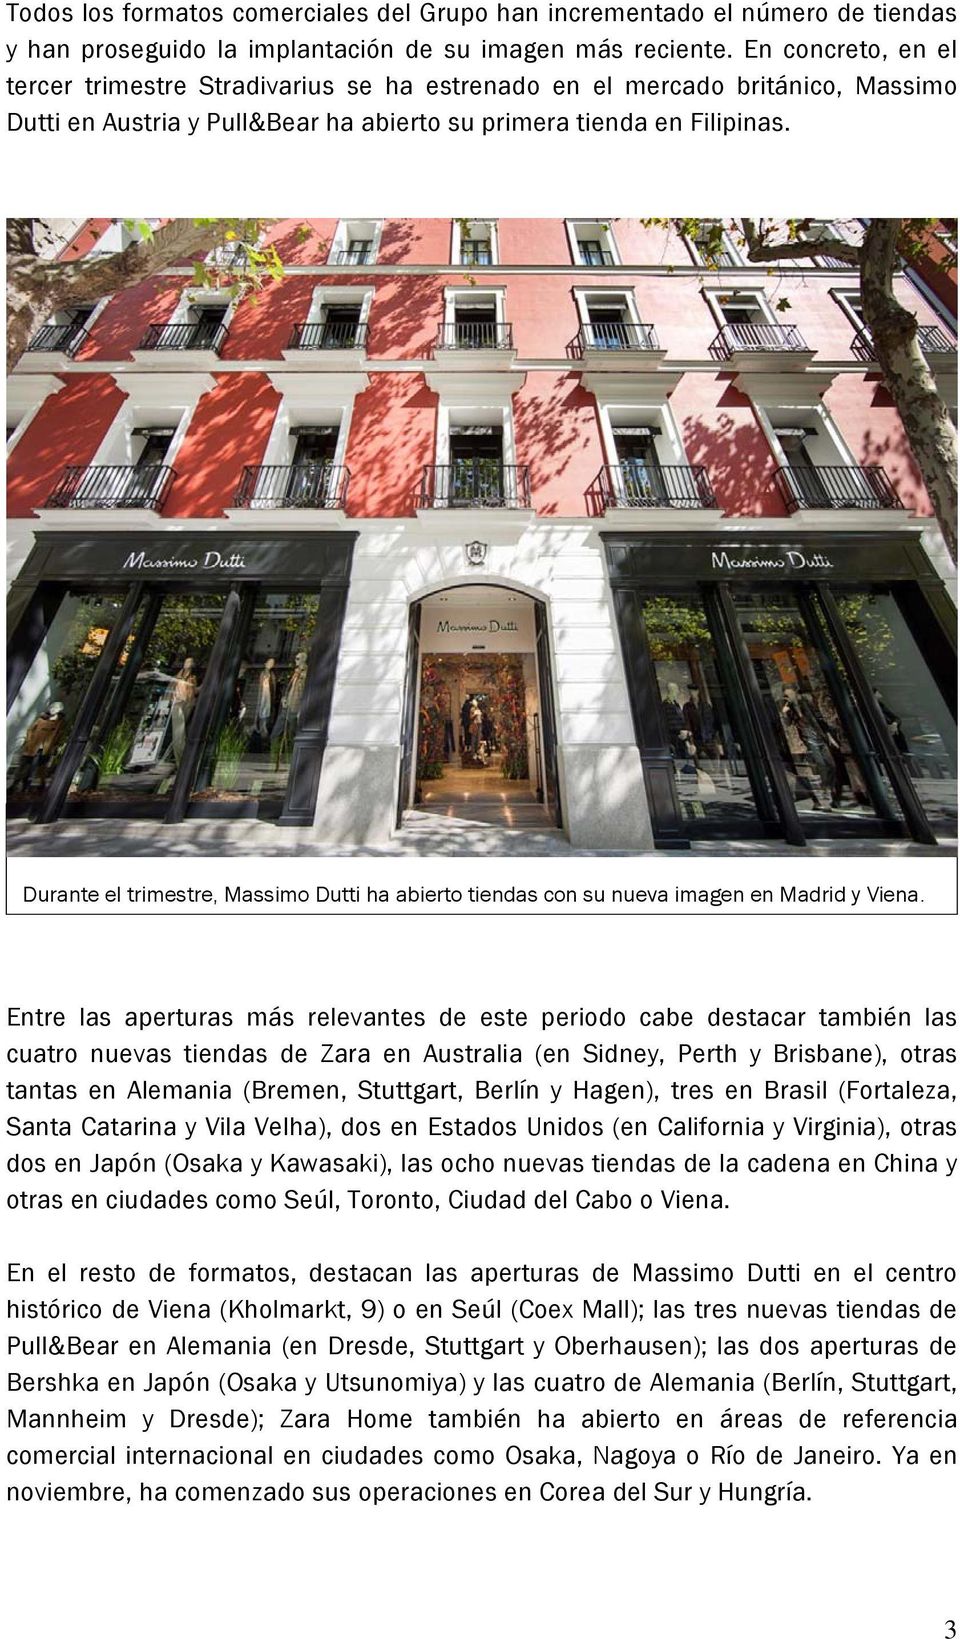 Durante el trimestre, Massimo Dutti ha abierto tiendas con su nueva imagen en Madrid y Viena.